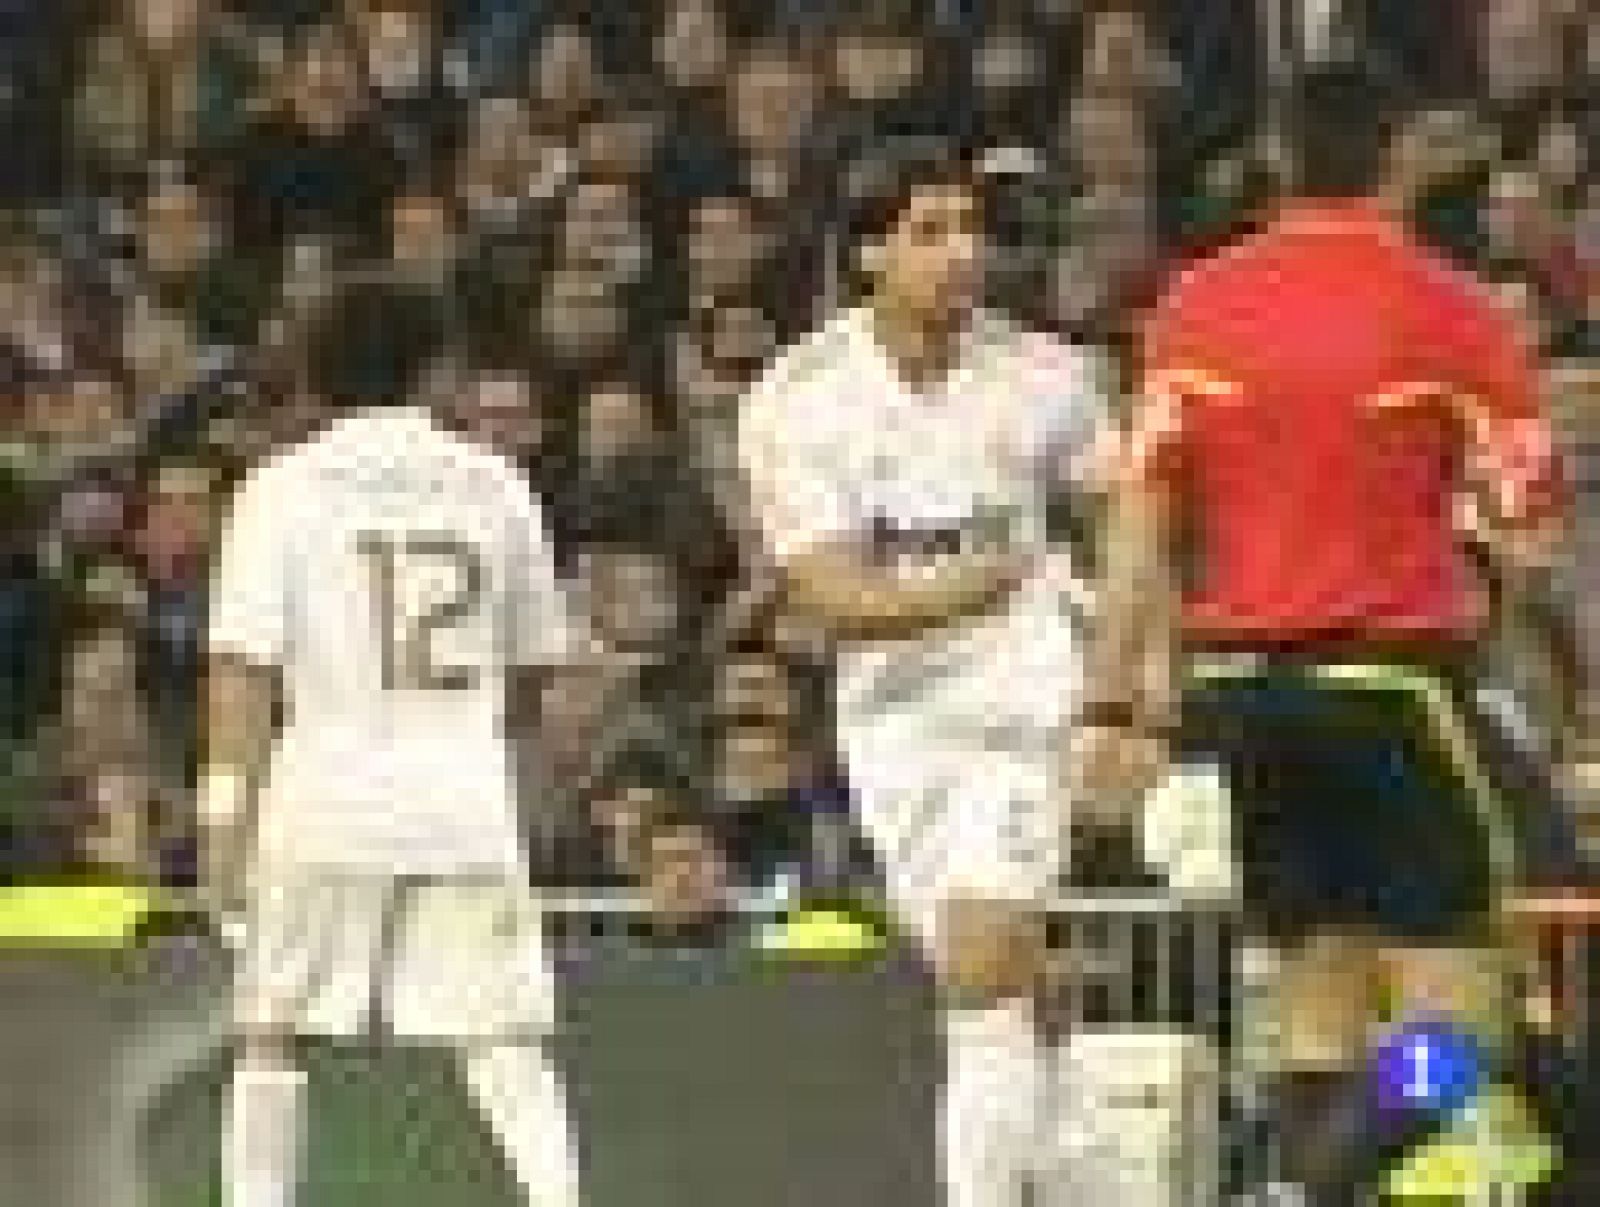 Mourinho se la juega en Copa del Rey ante el Málaga con tres cambios de una tacada y acierta. El pobre Madrid del primer tiempo dio paso a otro radicalmente distinto. Con tres cambios, Mourinho revolucionó un encuentro liderado por Benzema. 